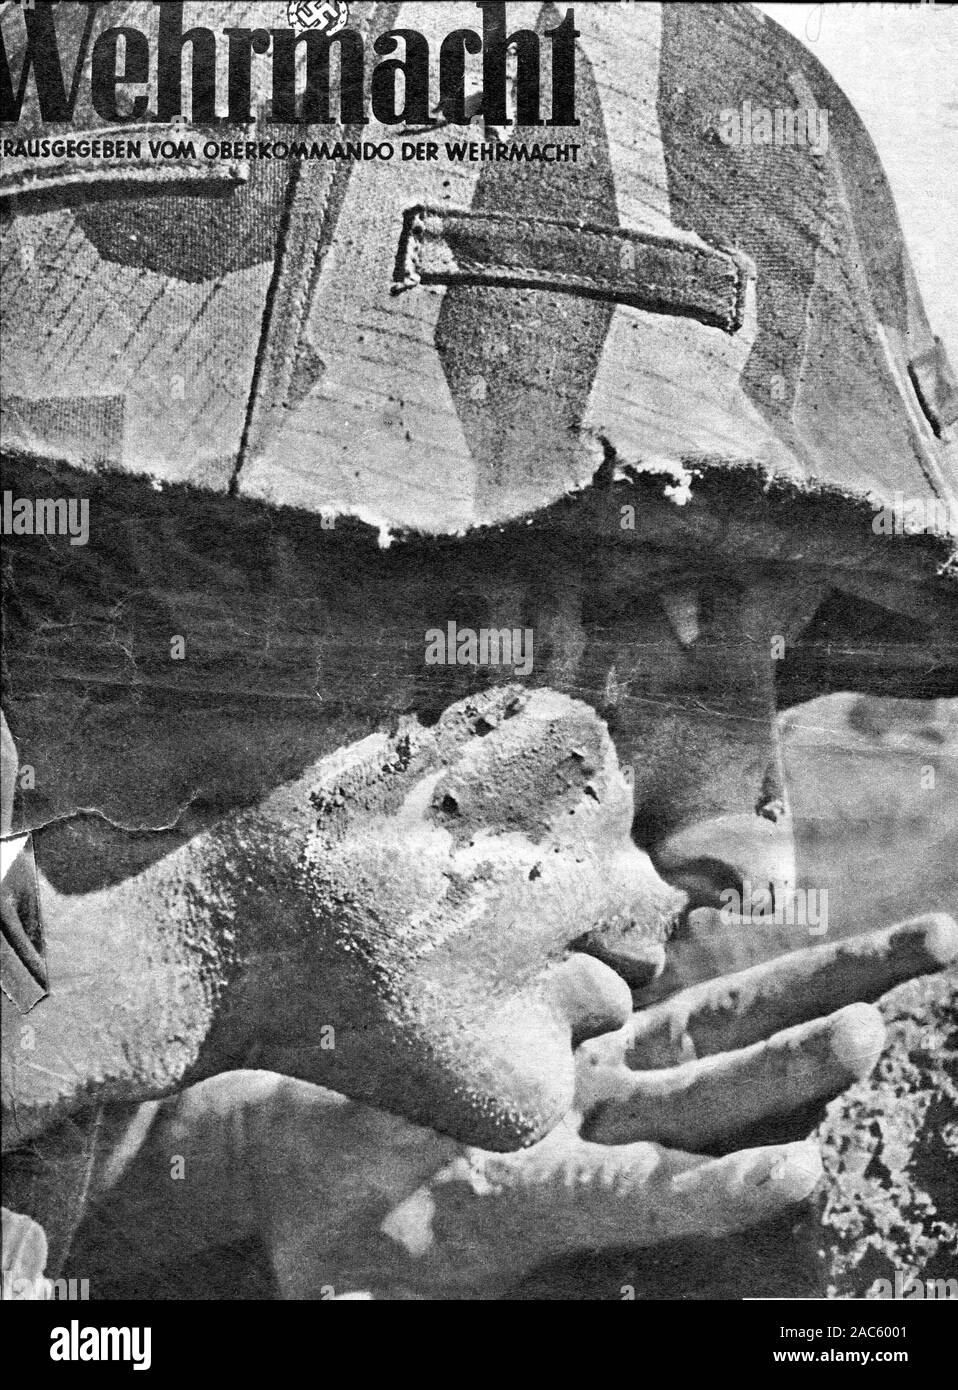 Soldat nazi allemand sur la page couverture du journal Die Wehrmacht de 1943 Banque D'Images